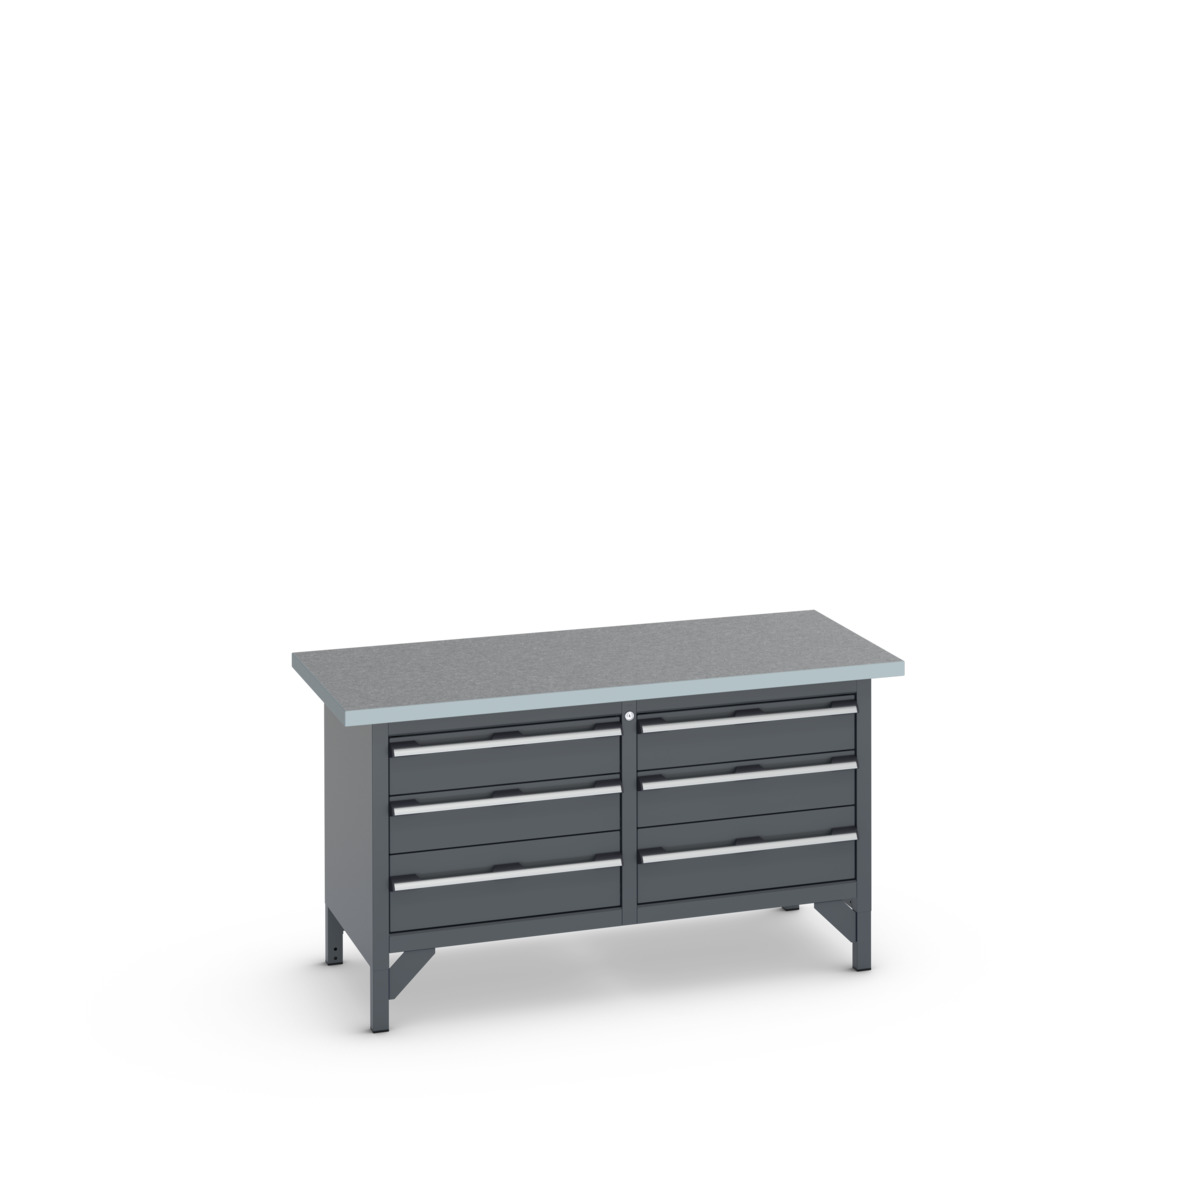 41002033.77V - cubio storage bench (lino)